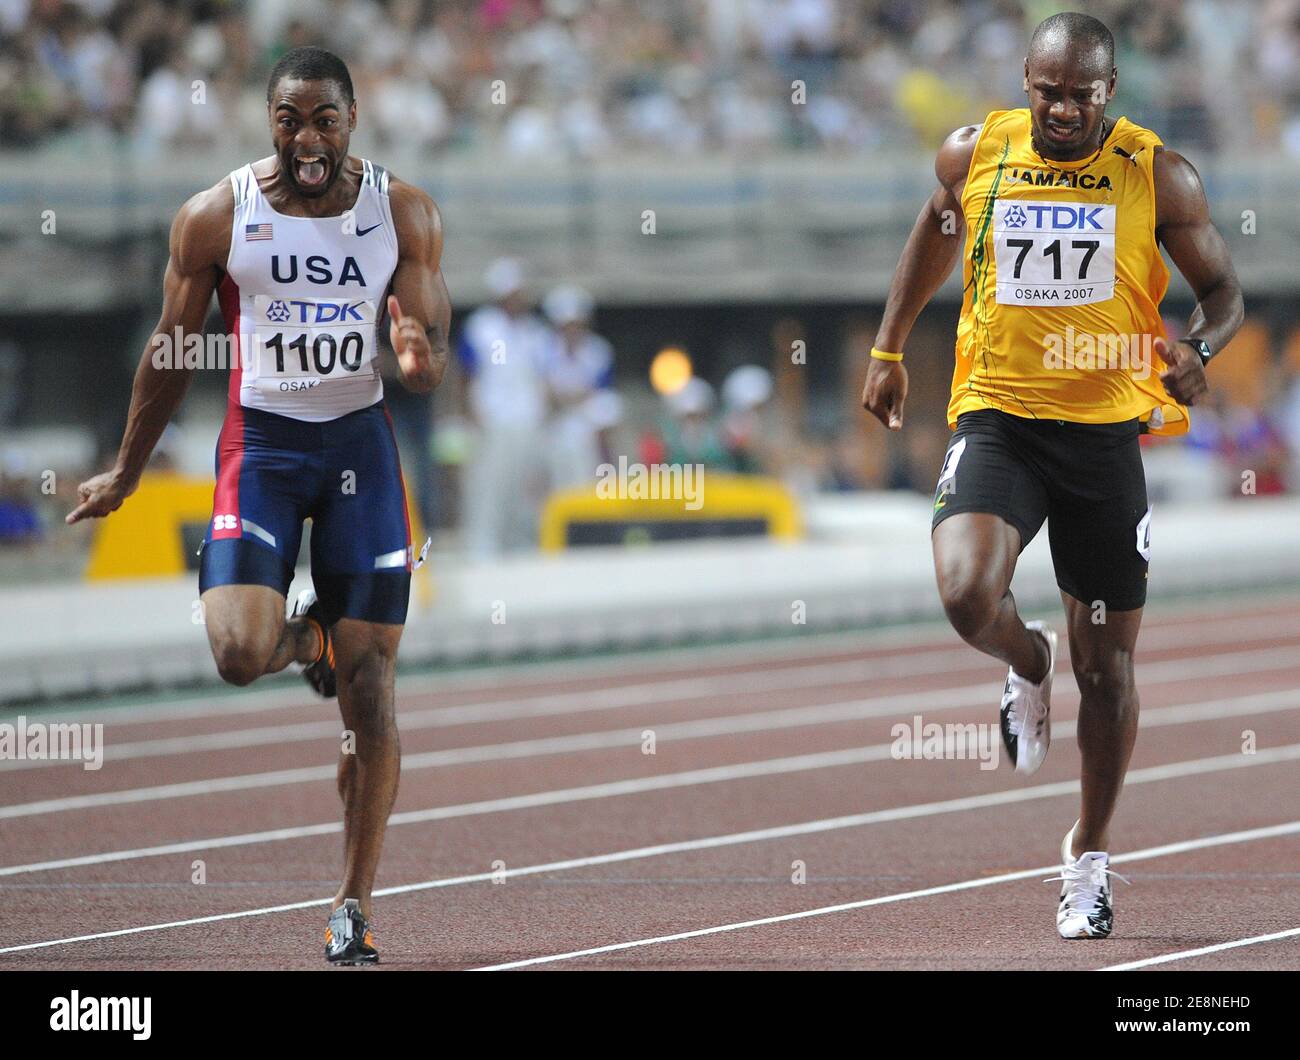 Le meilleur sprinter américain Tyson gay et l'ancien détenteur du record du  monde de 100m de la Jamaïque Asafa Powell ont échoué aux tests de dépistage  de drogues. Gay, 30 ans, le